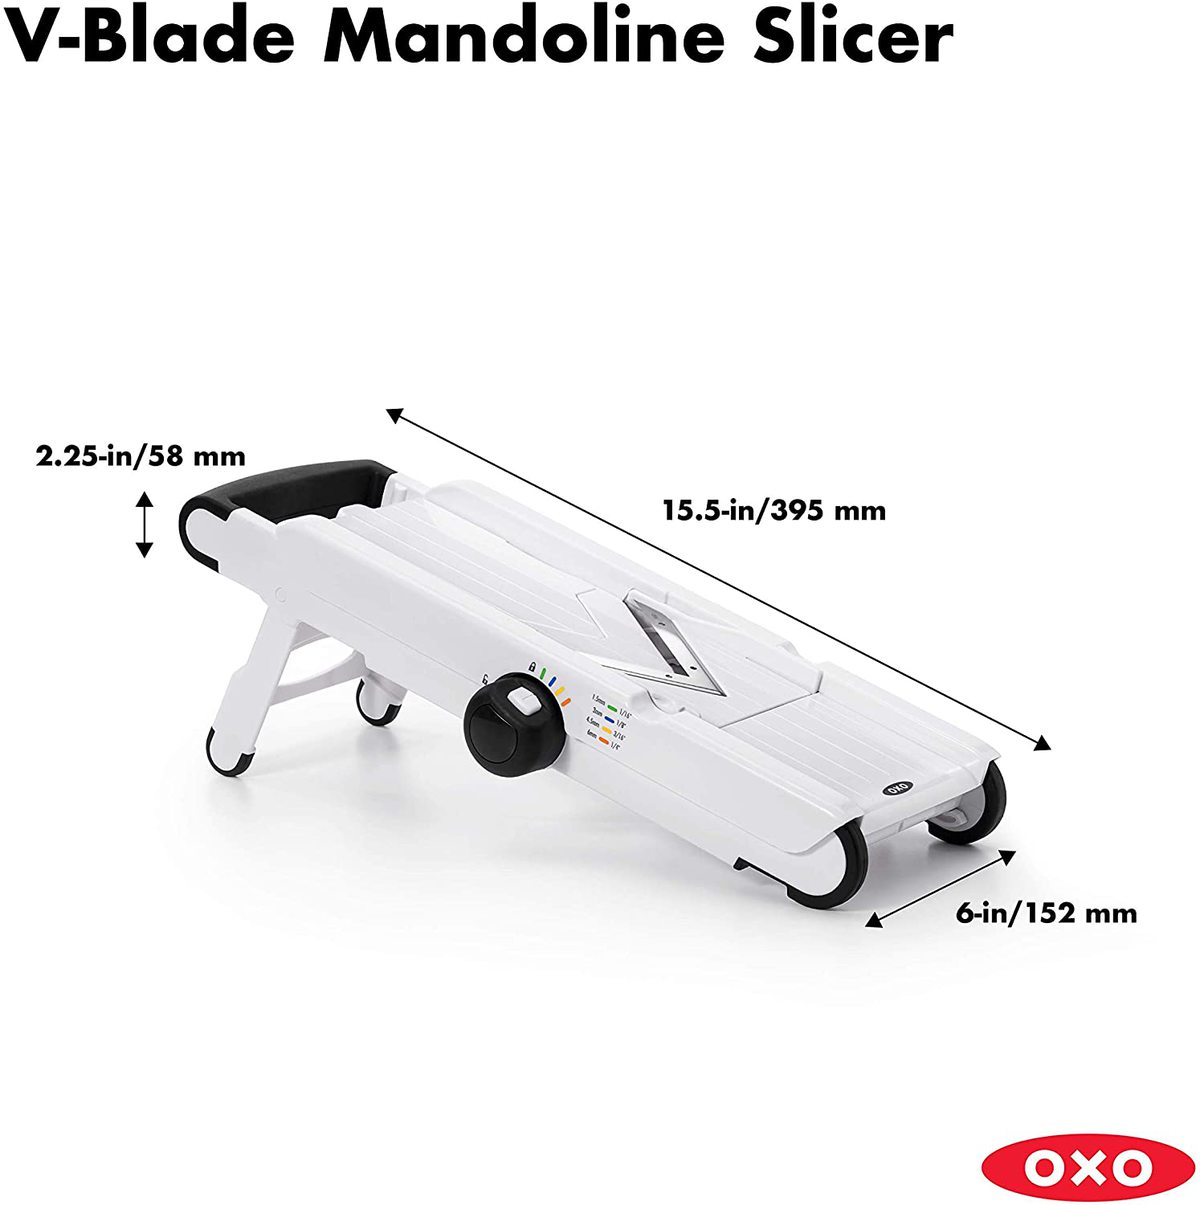 OXO V-Blade Mandoline Slicer + Reviews